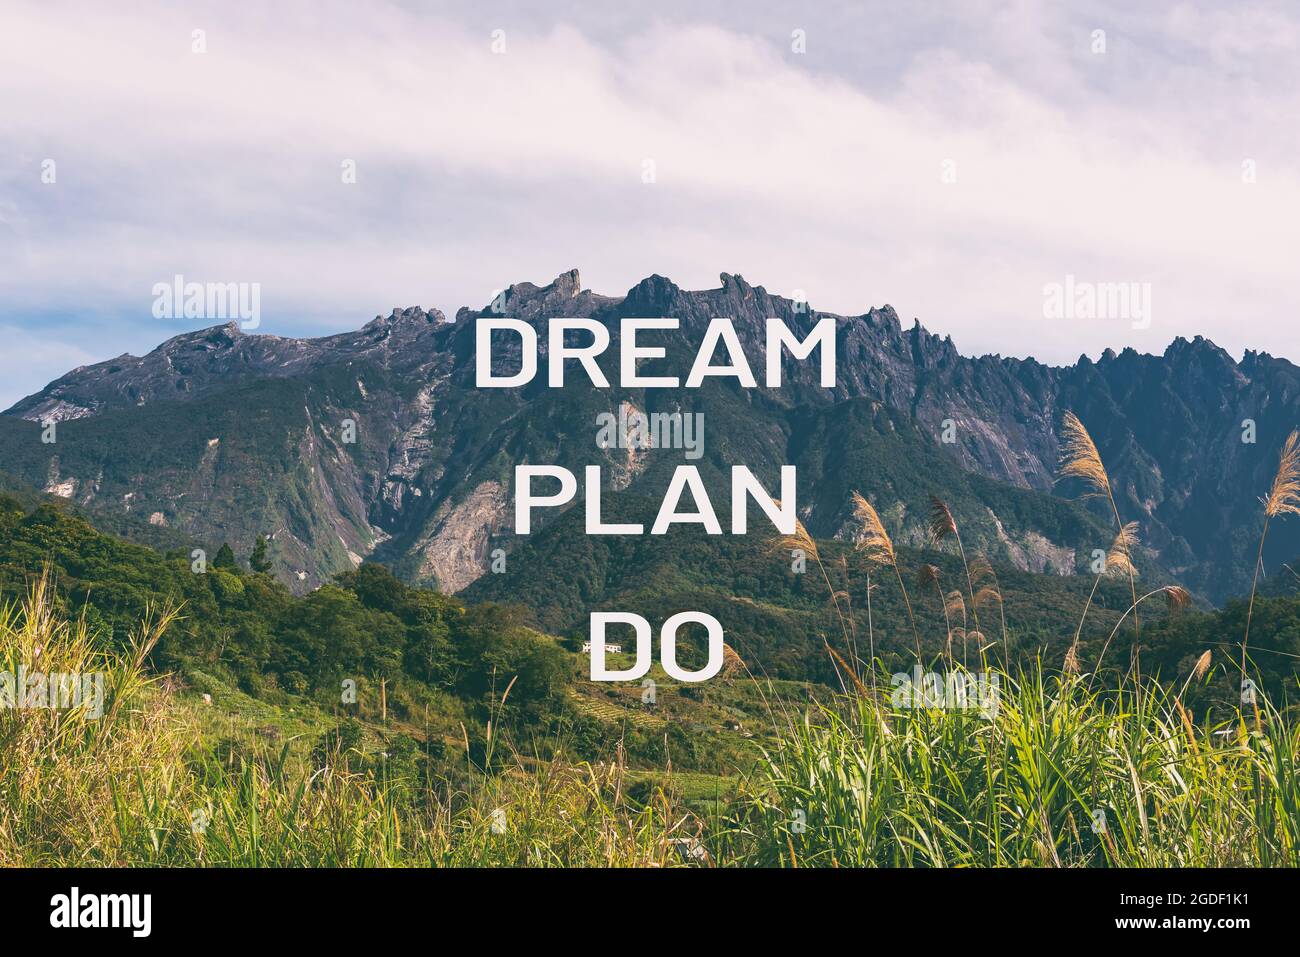 Motivierende und inspirierende Zitate - Traum Plan tun. Stockfoto